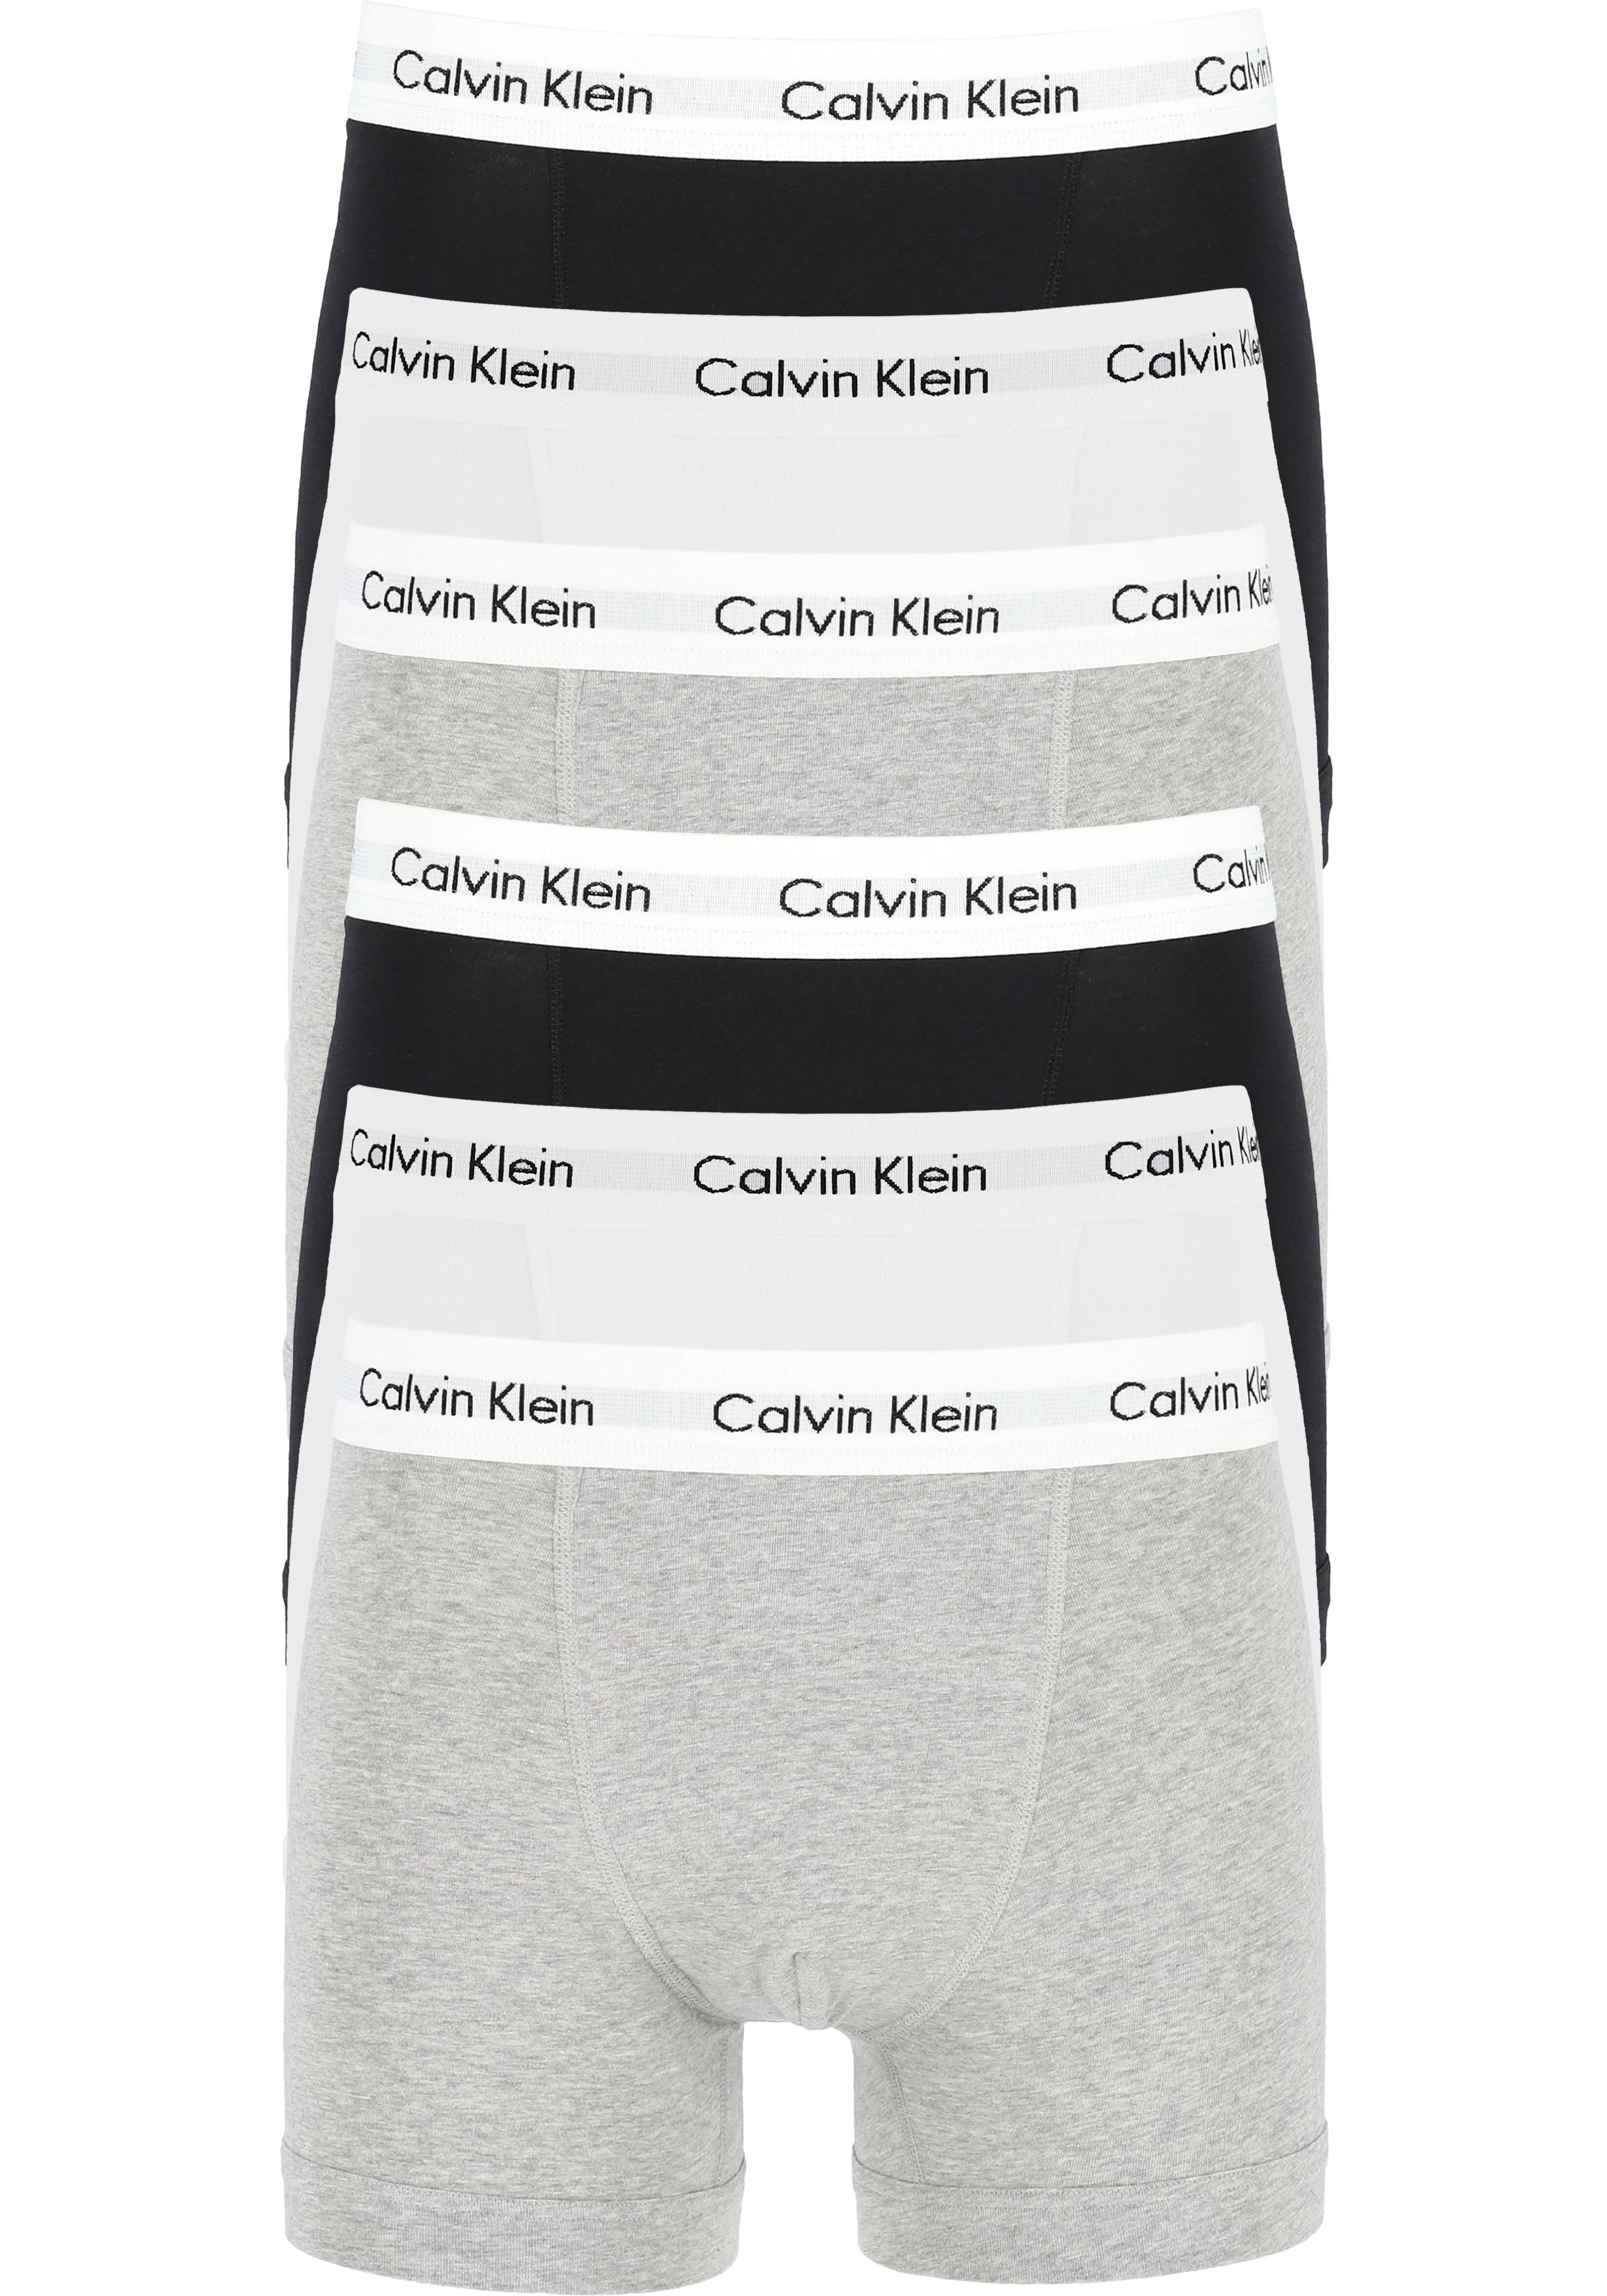 Initiatief Detector Alsjeblieft kijk Actie 6-pack: Calvin Klein trunks, heren boxers normale lengte, zwart,... -  Shop de nieuwste voorjaarsmode